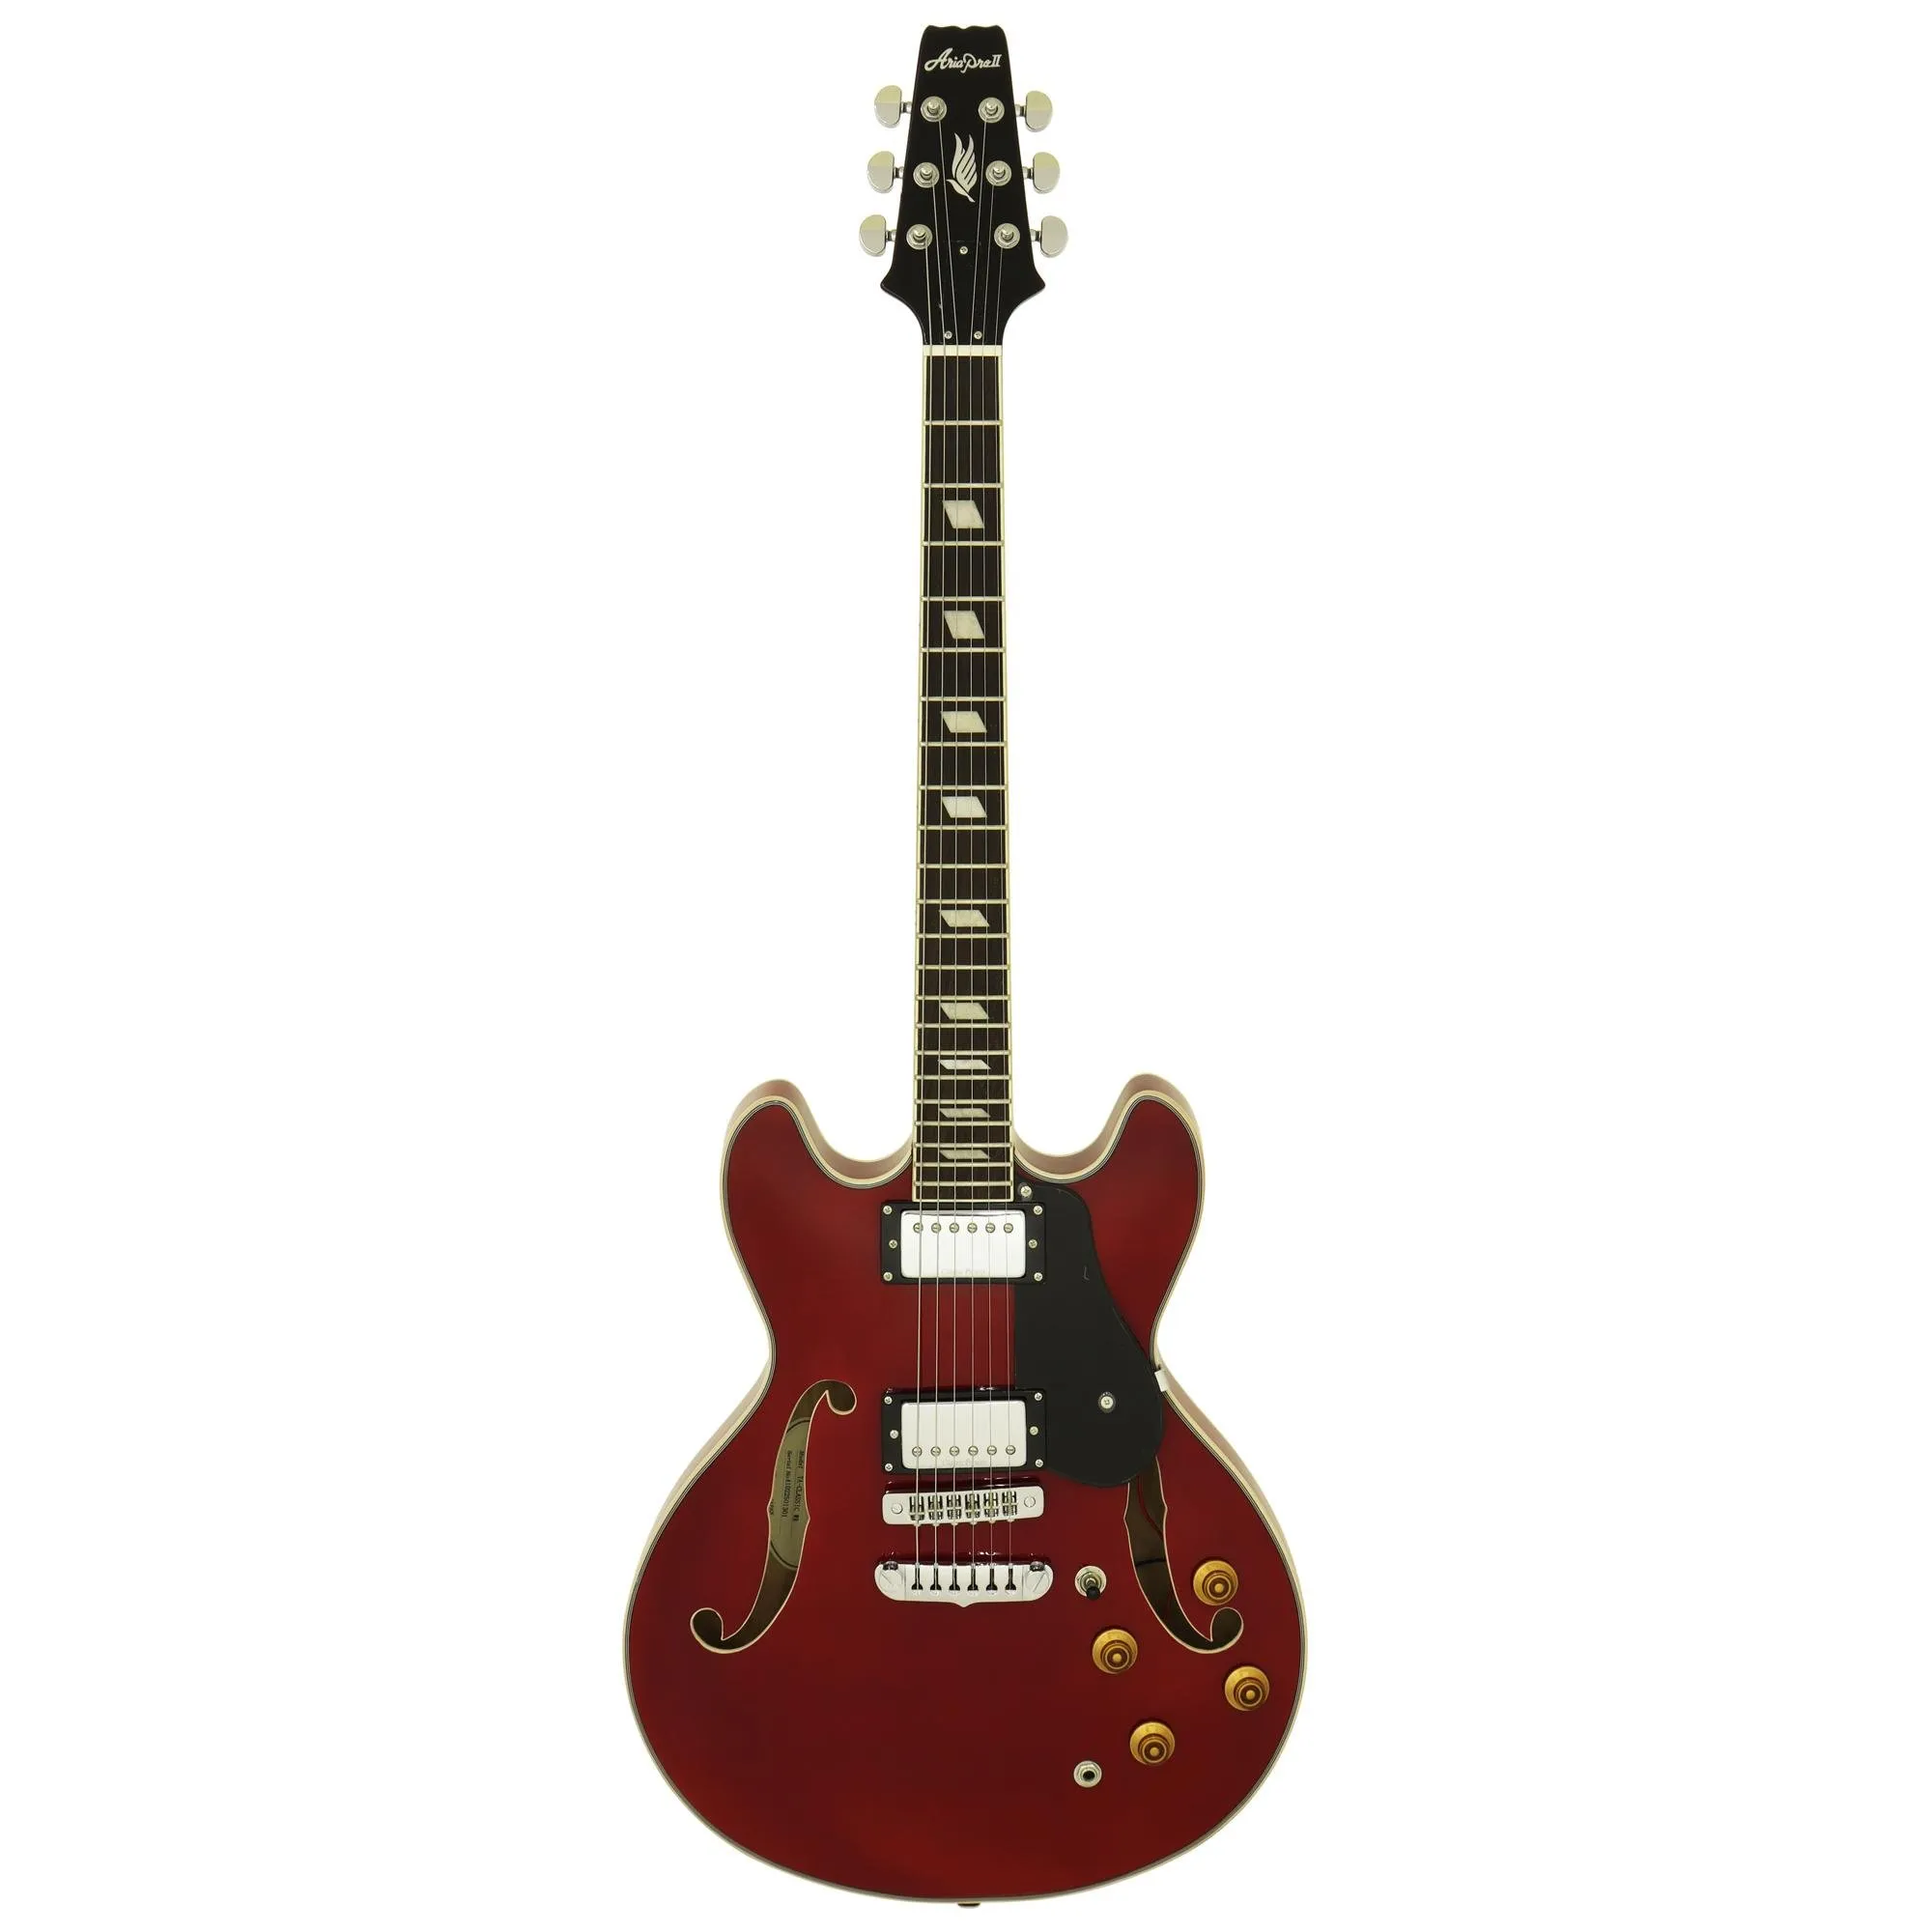 Guitarra Aria Pro II TA-CLASSIC Wine Red por 3.441,00 à vista no boleto/pix ou parcele em até 12x sem juros. Compre na loja Mundomax!